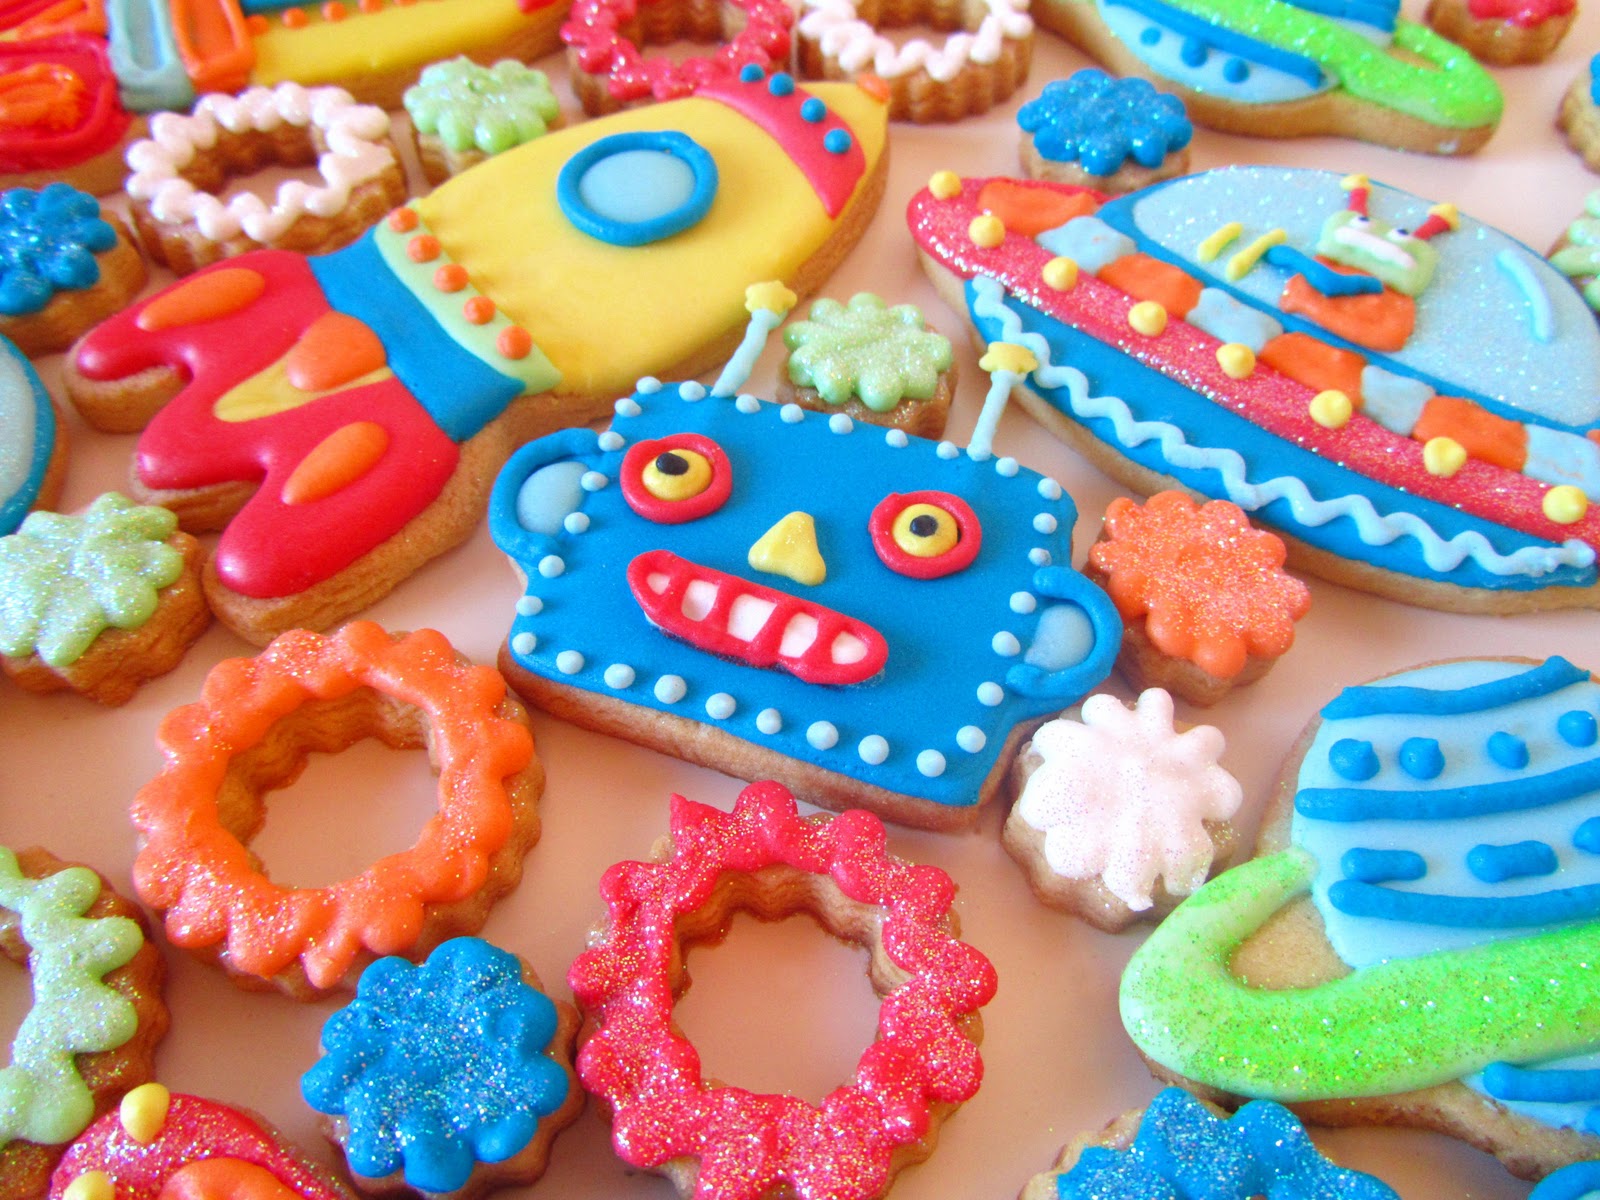 Galletas decoradas: robots espaciales  Postreadicción: Cursos de  pastelería, galletas decoradas, cortadores, papel de azúcar y mucho más.